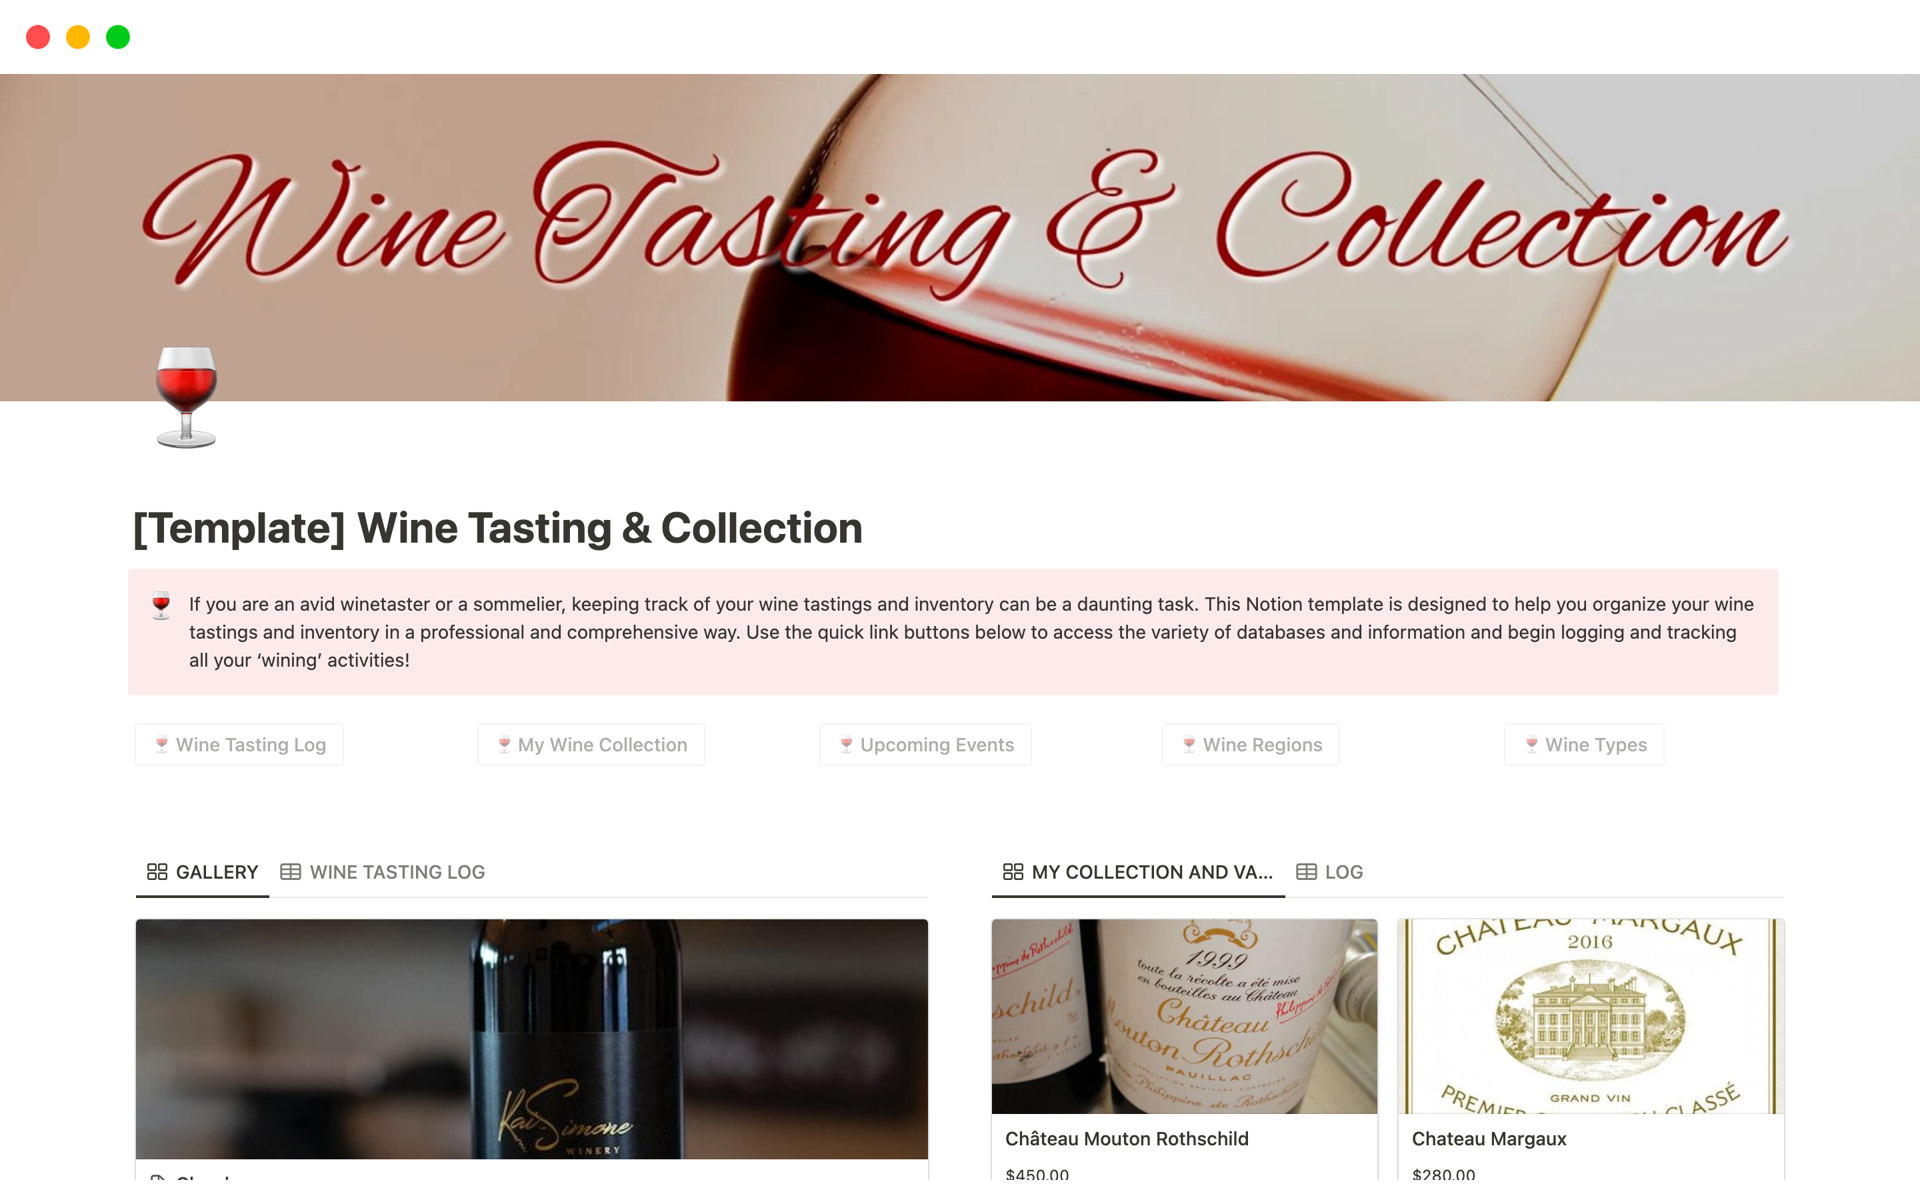 Aperçu du modèle de Wine Tasting & Collection